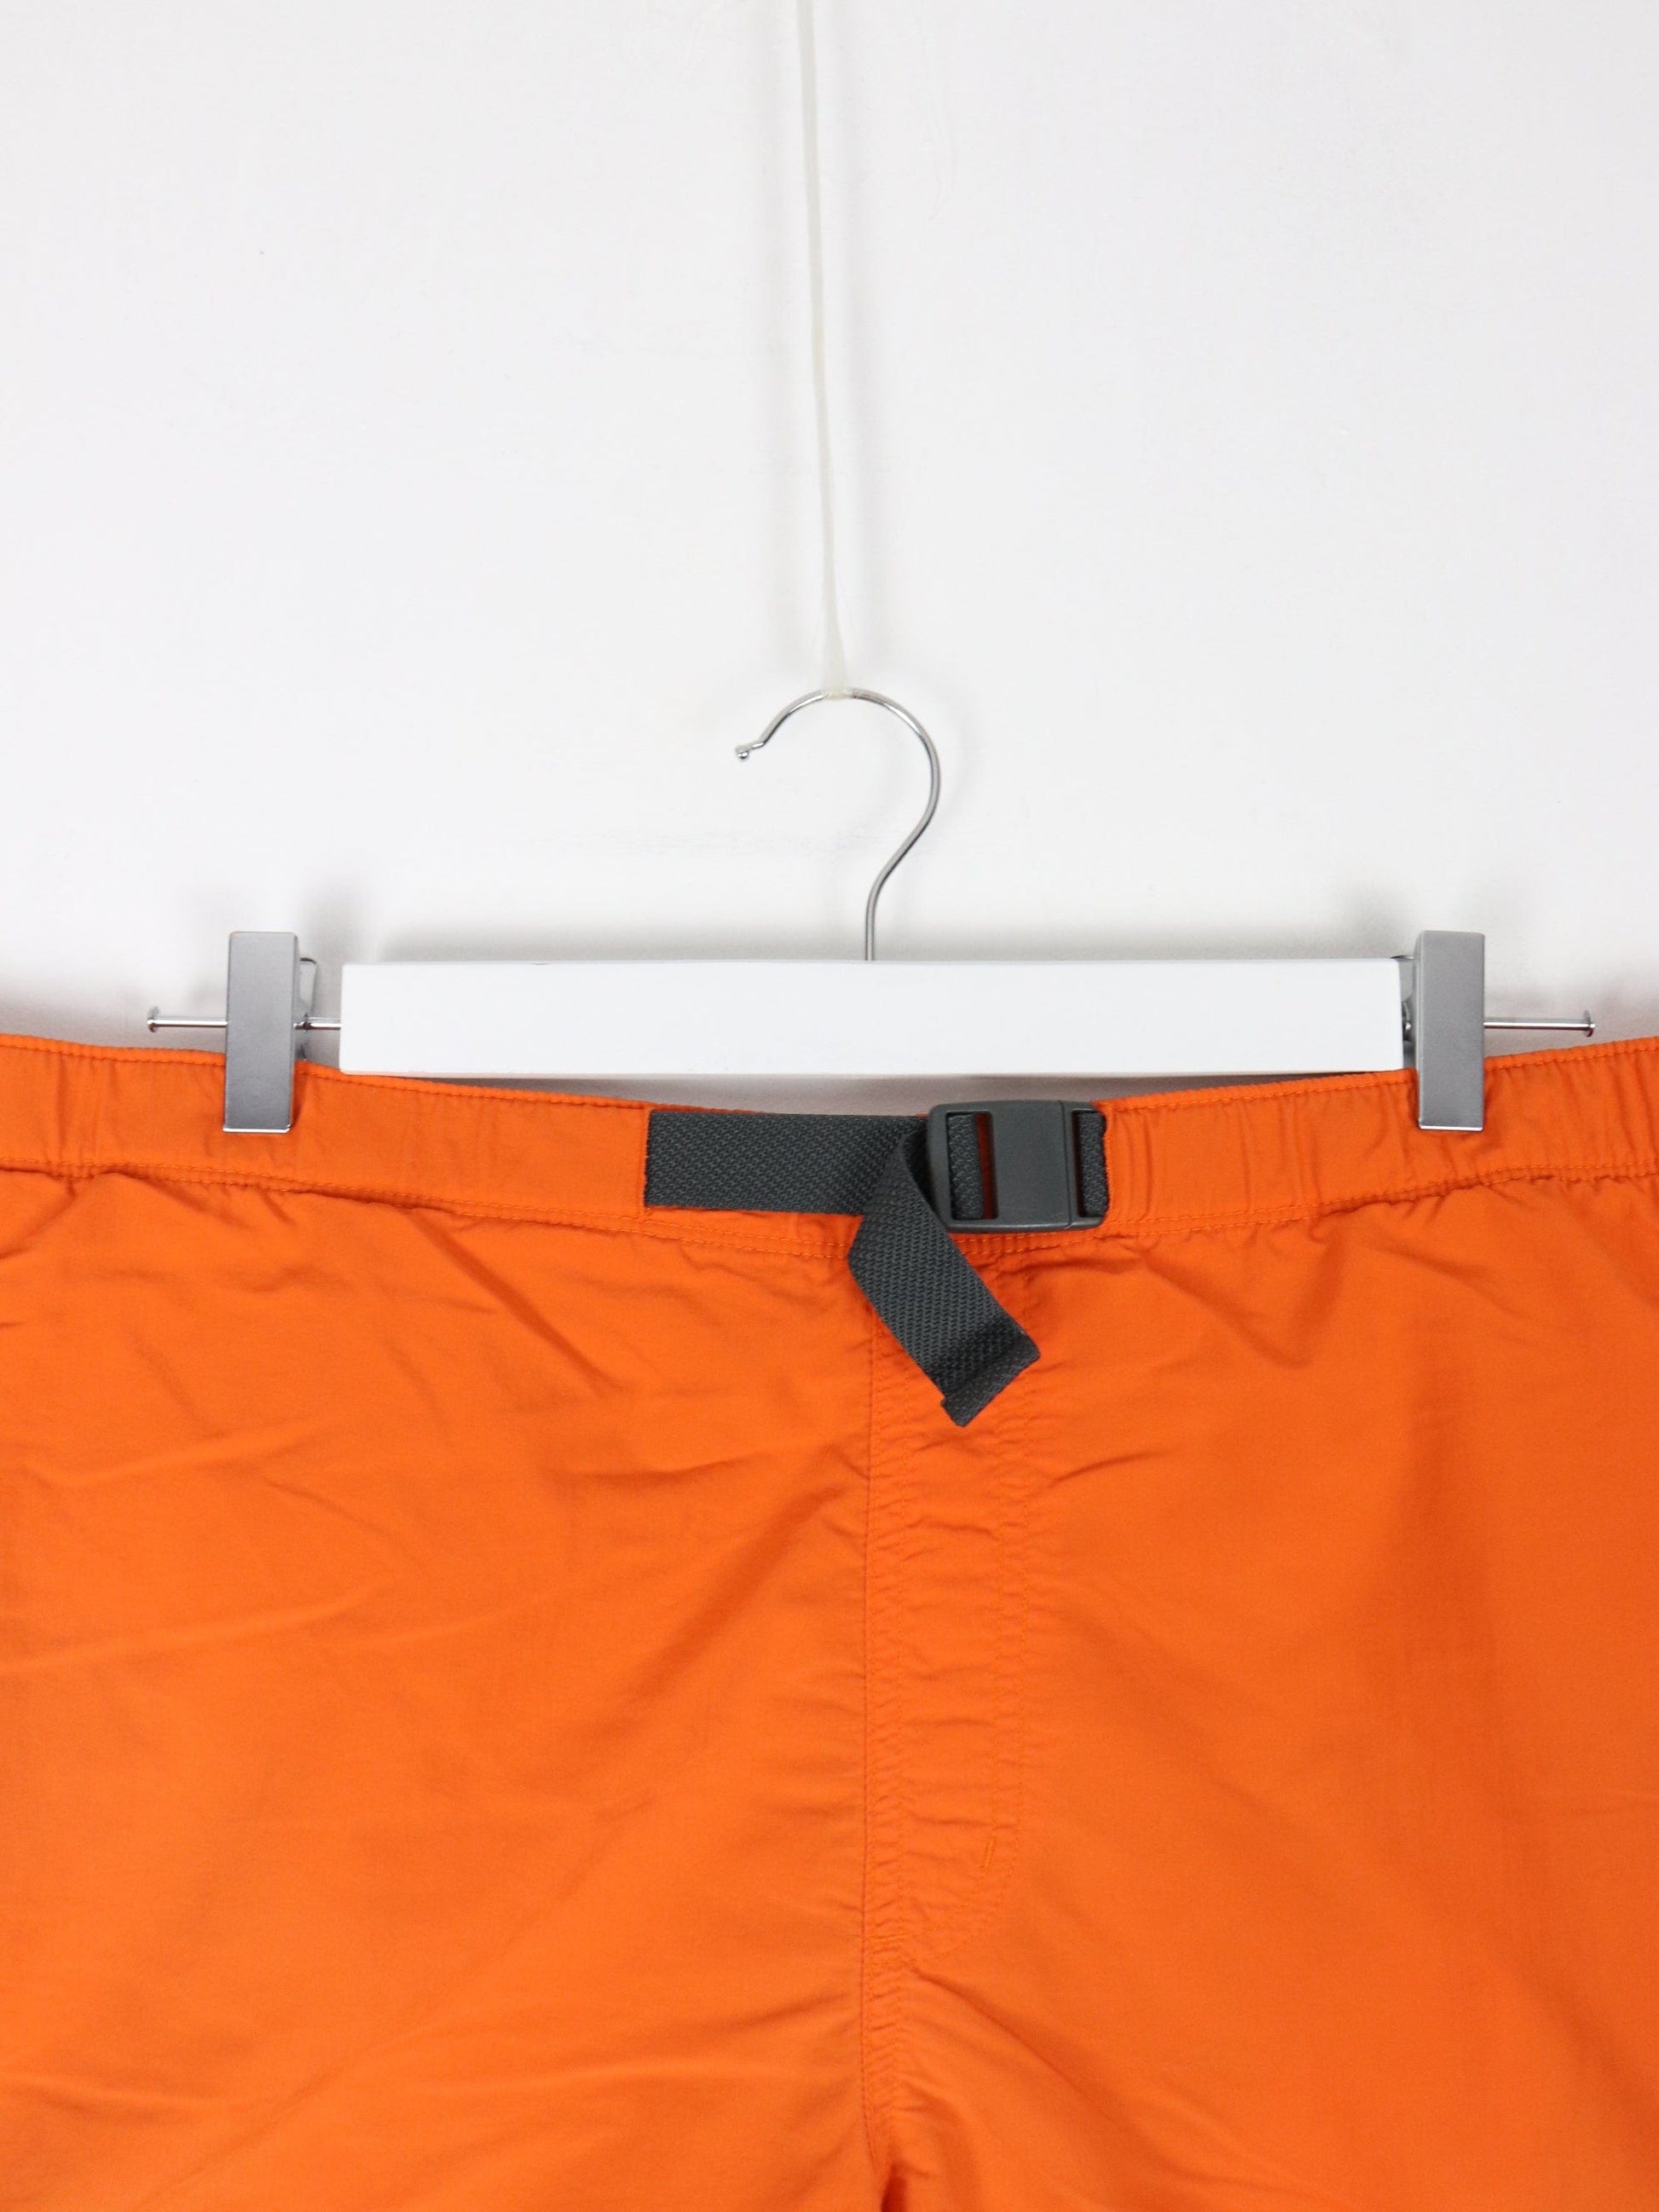 Columbia Shorts Columbia Swim Trunks Mens Large Orange Bathing Suit Shorts